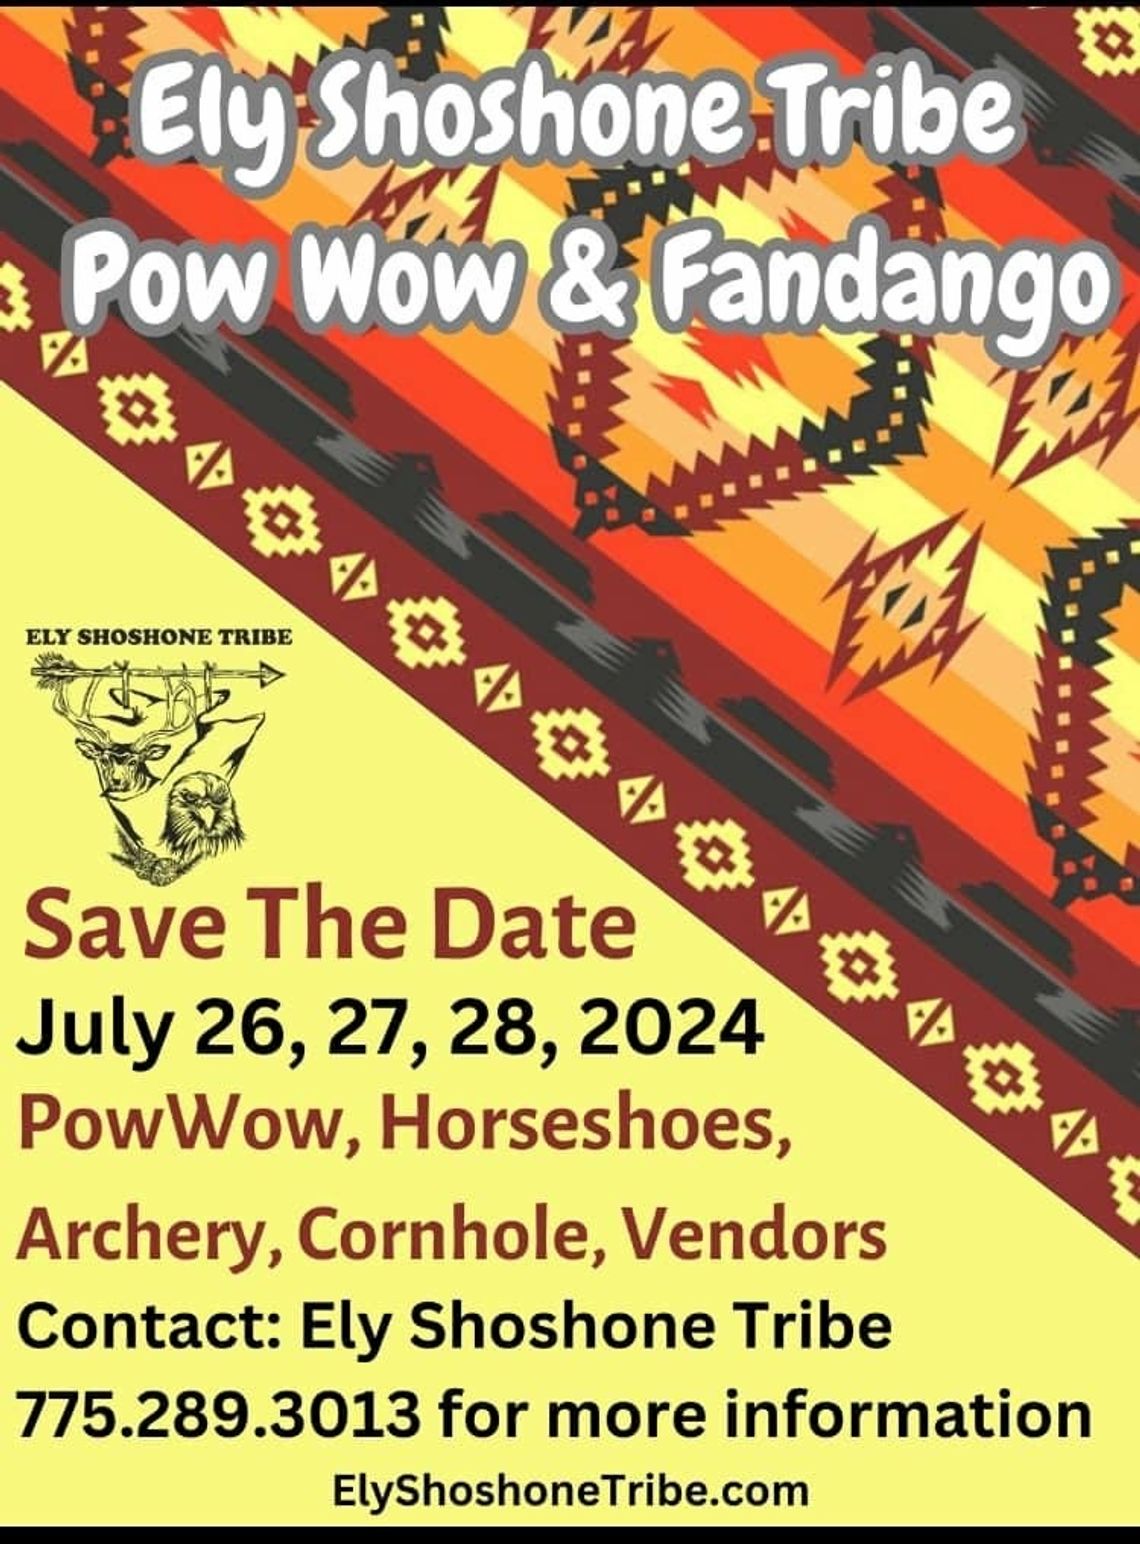 Ely Shoshone Tribe Pow Wow & Fandango